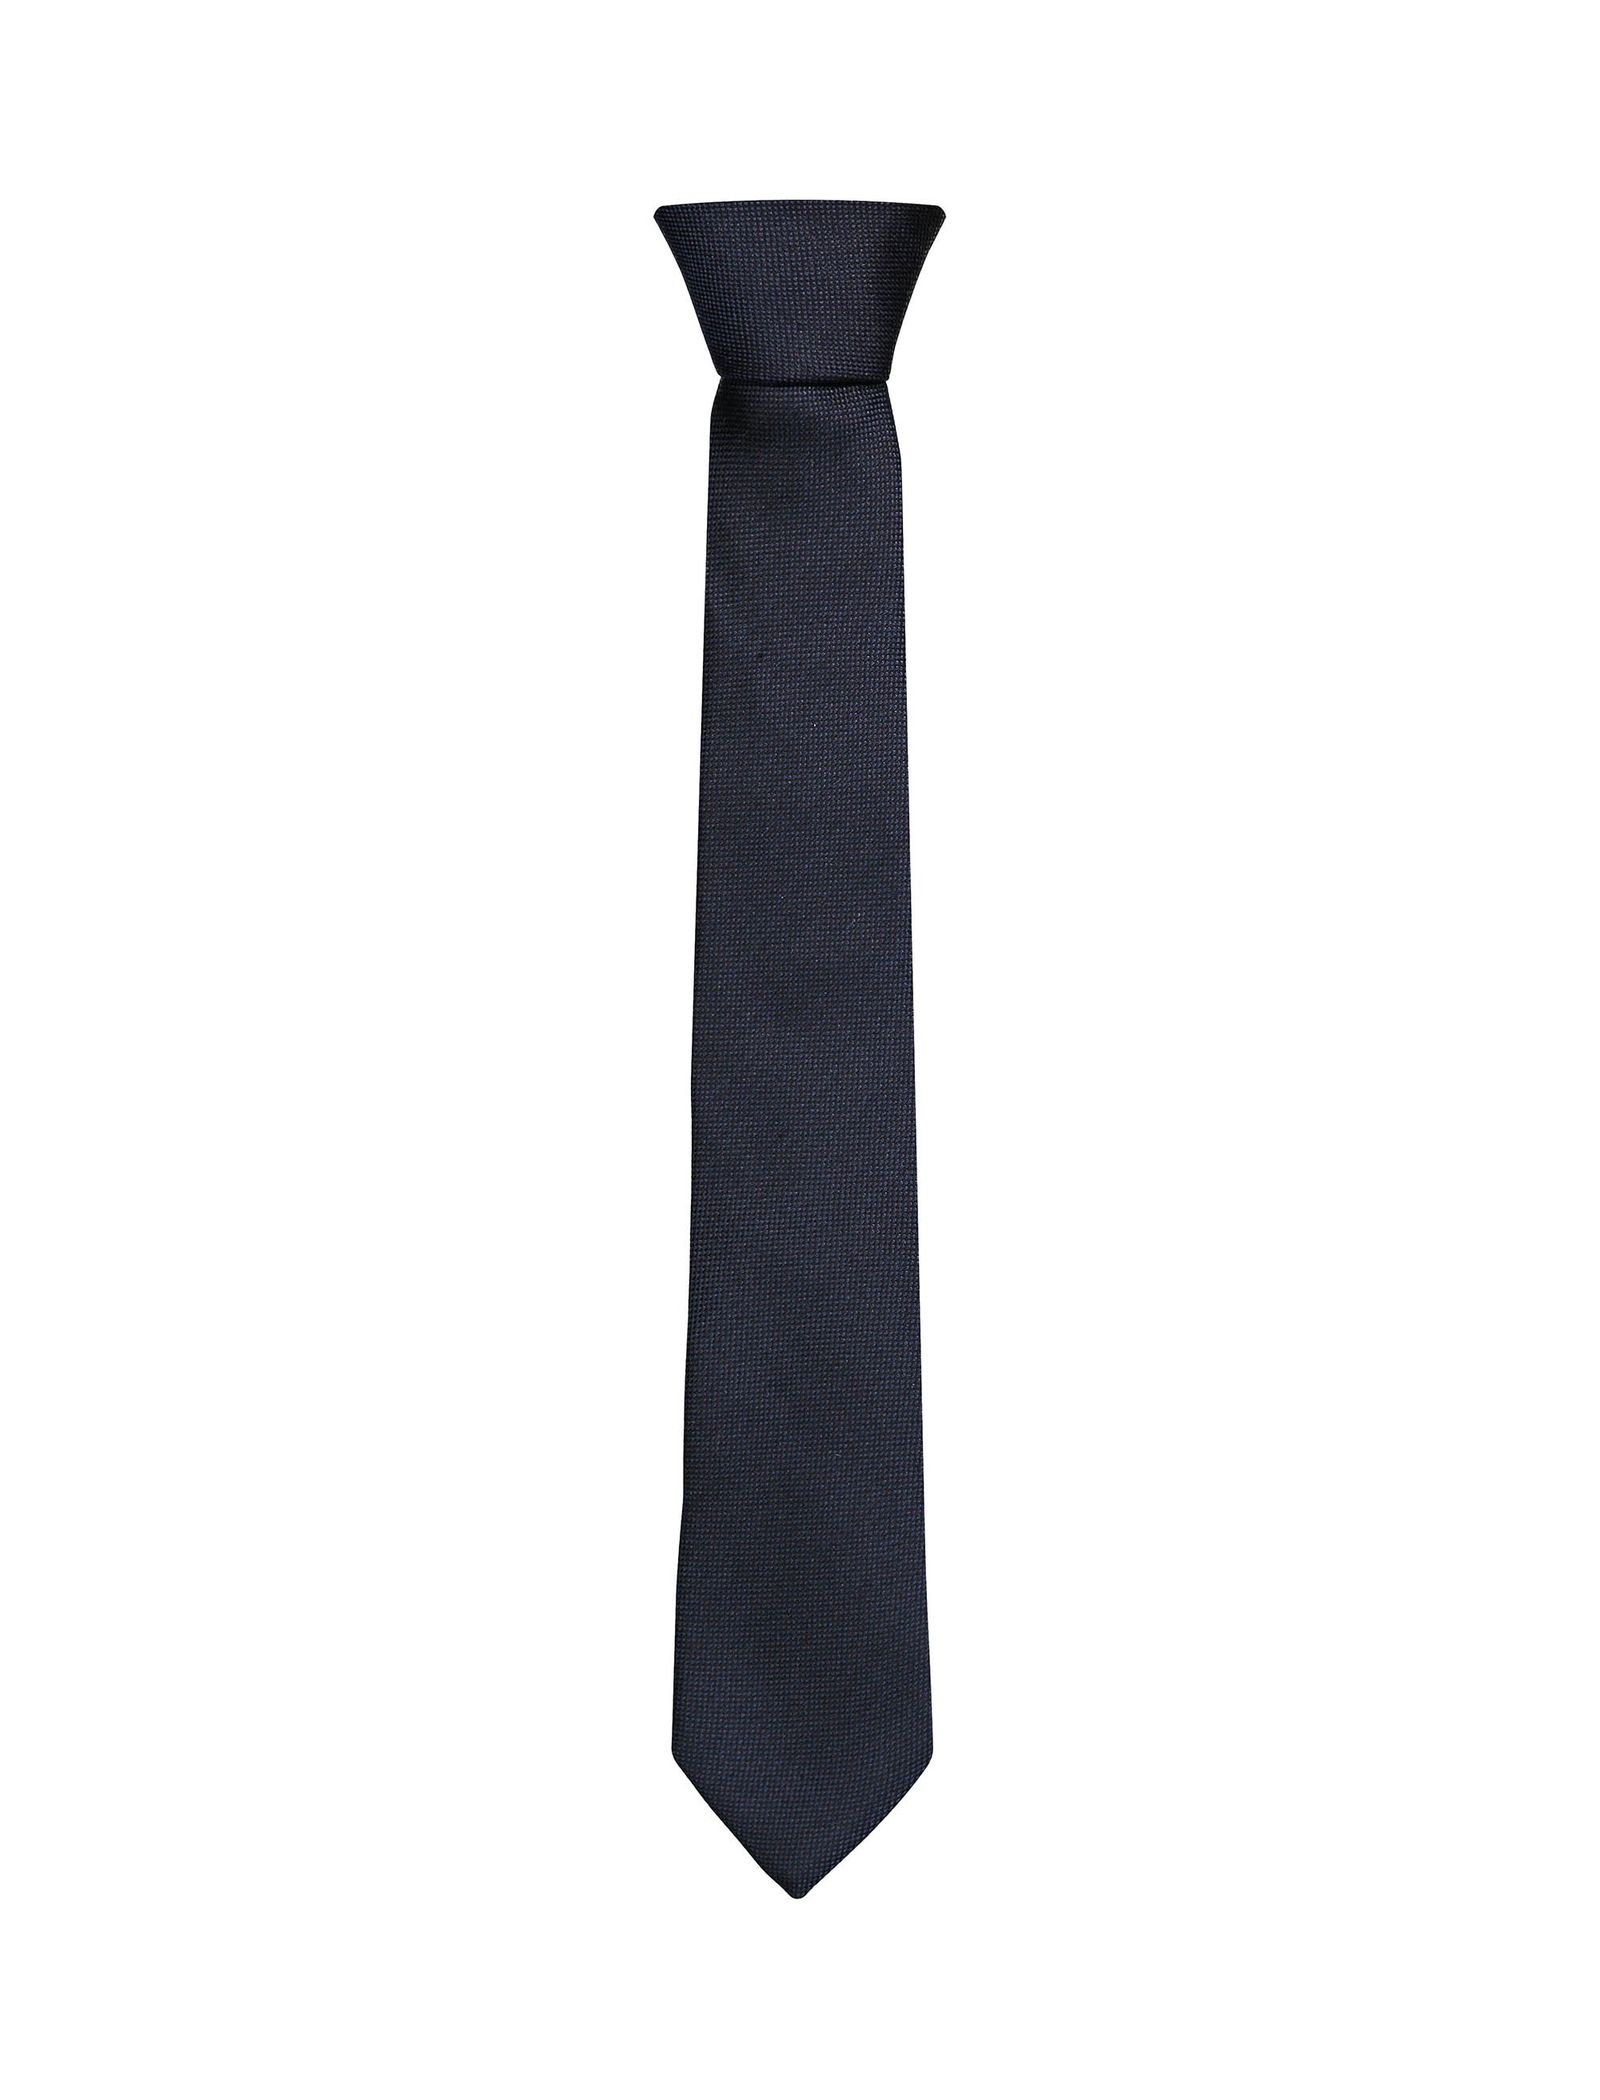 کراوات ابریشمی ساده مردانه - سلیو تک سایز - آبي کاربني - 2